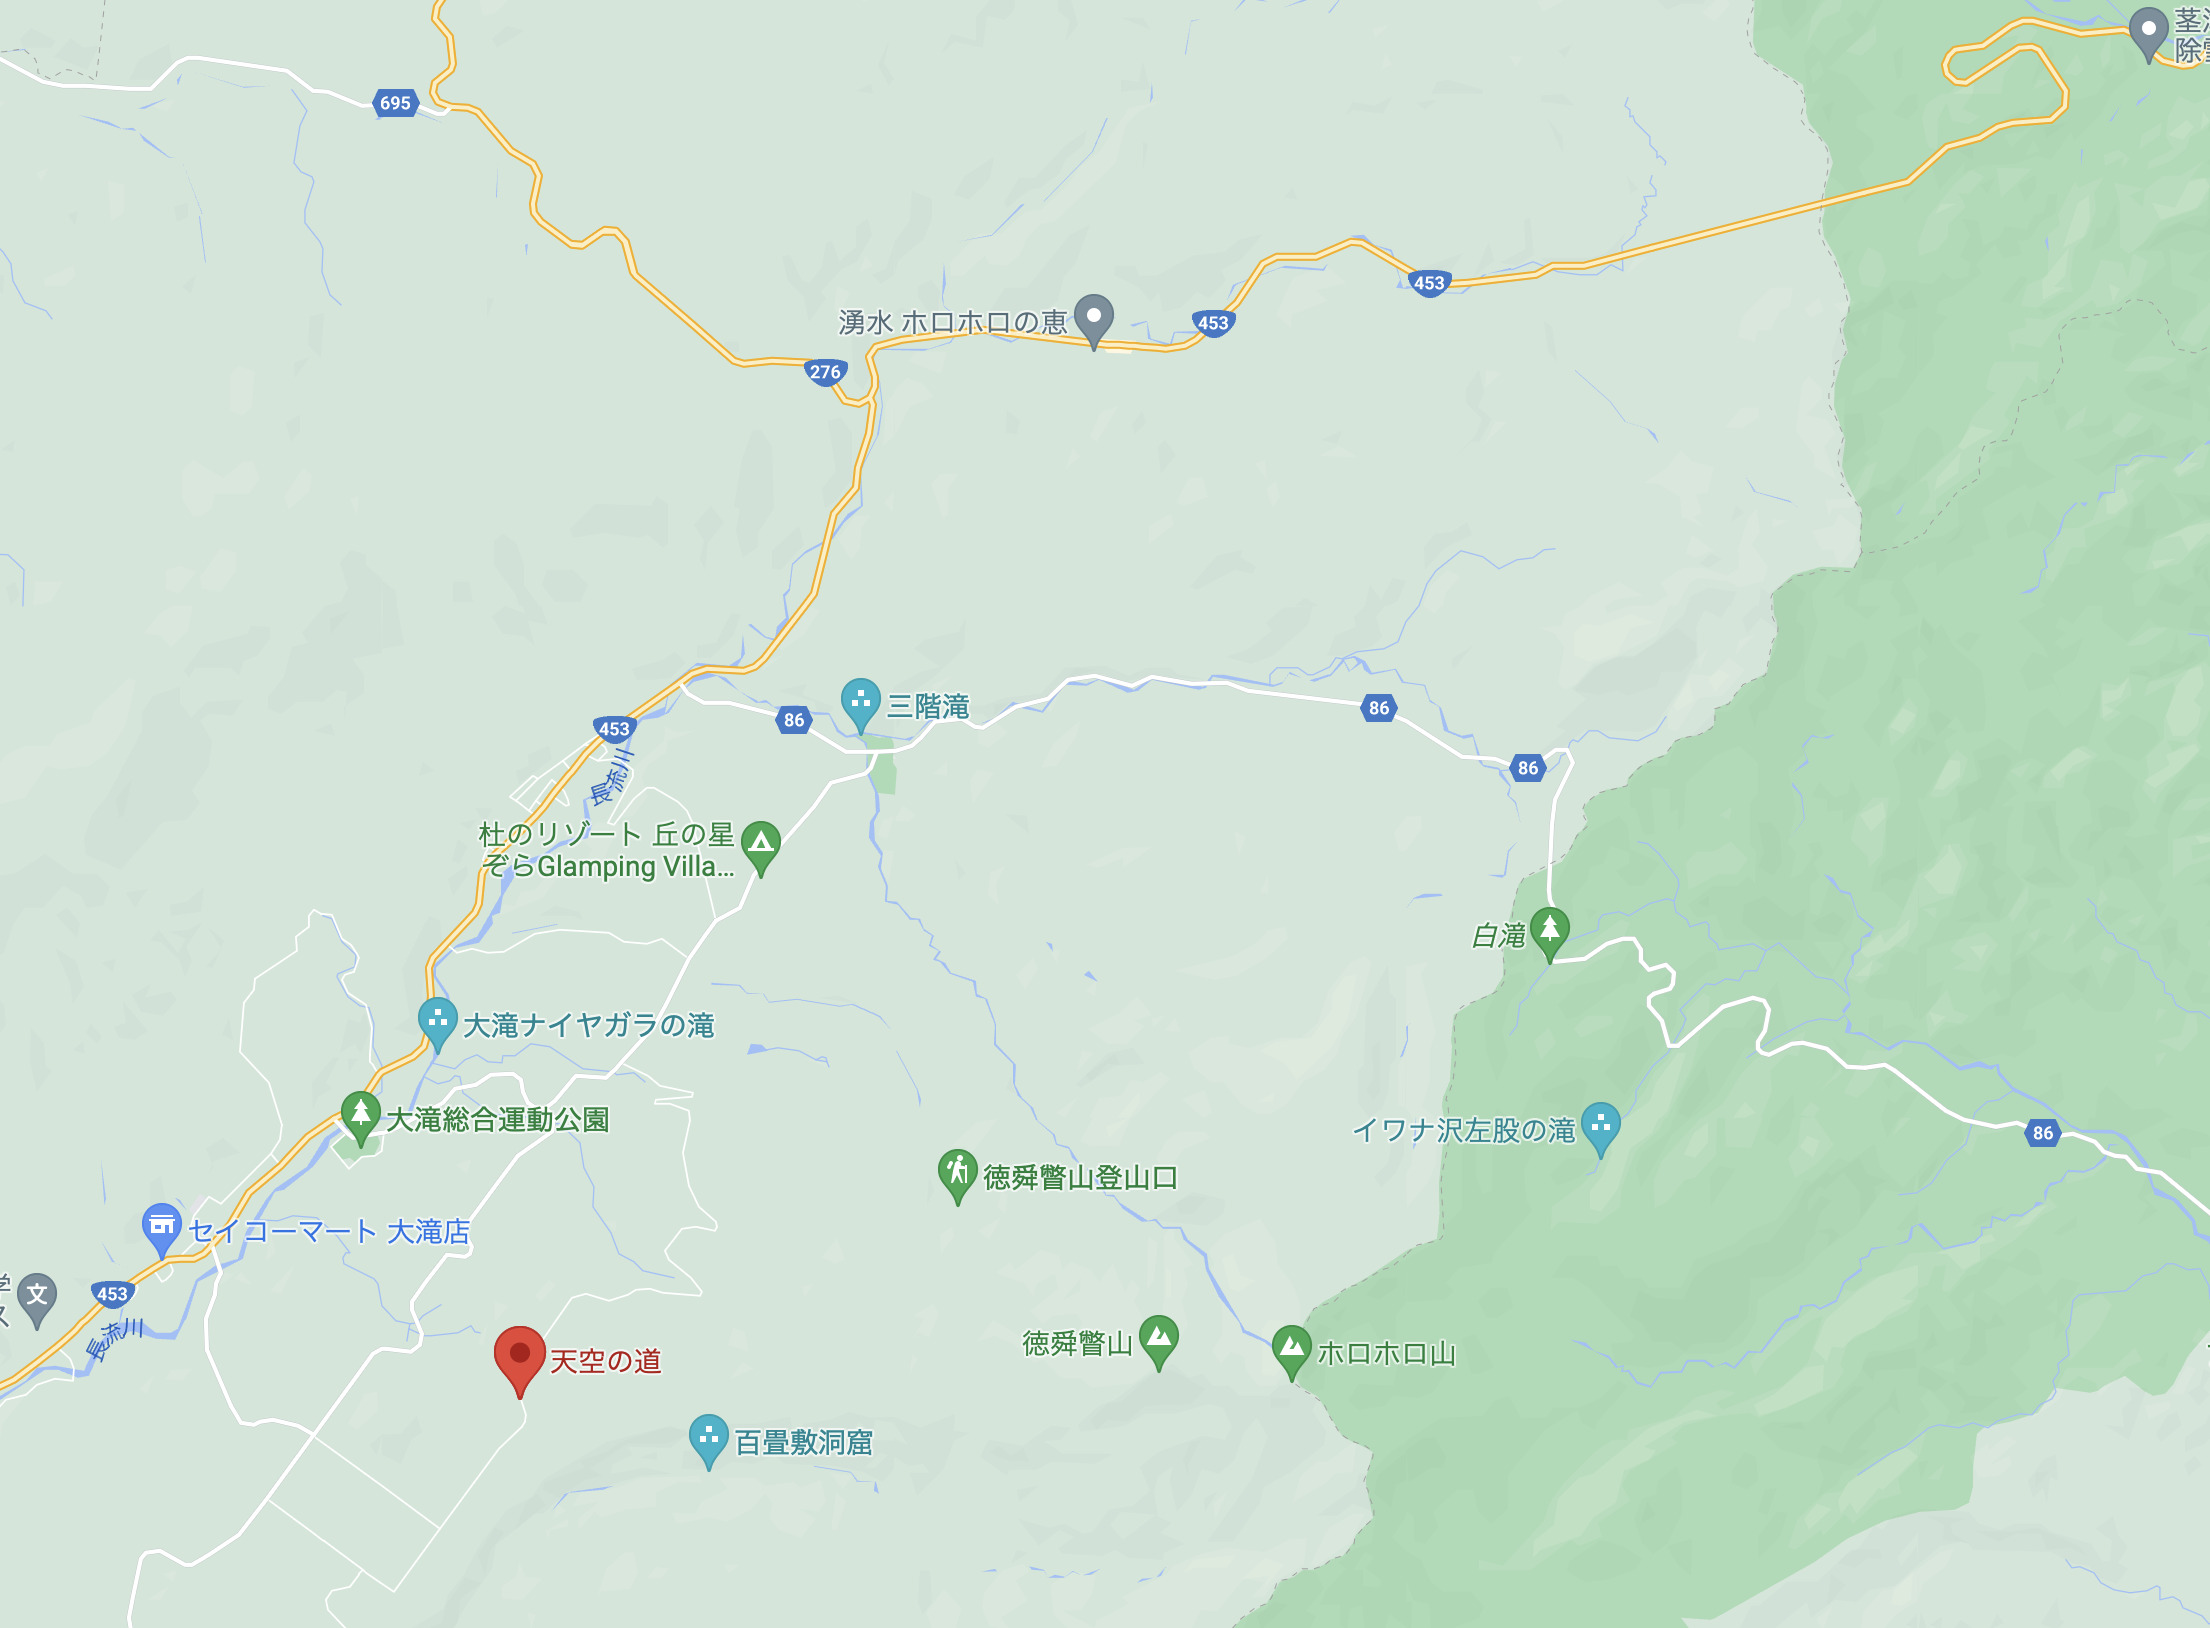 大滝詳細MAP